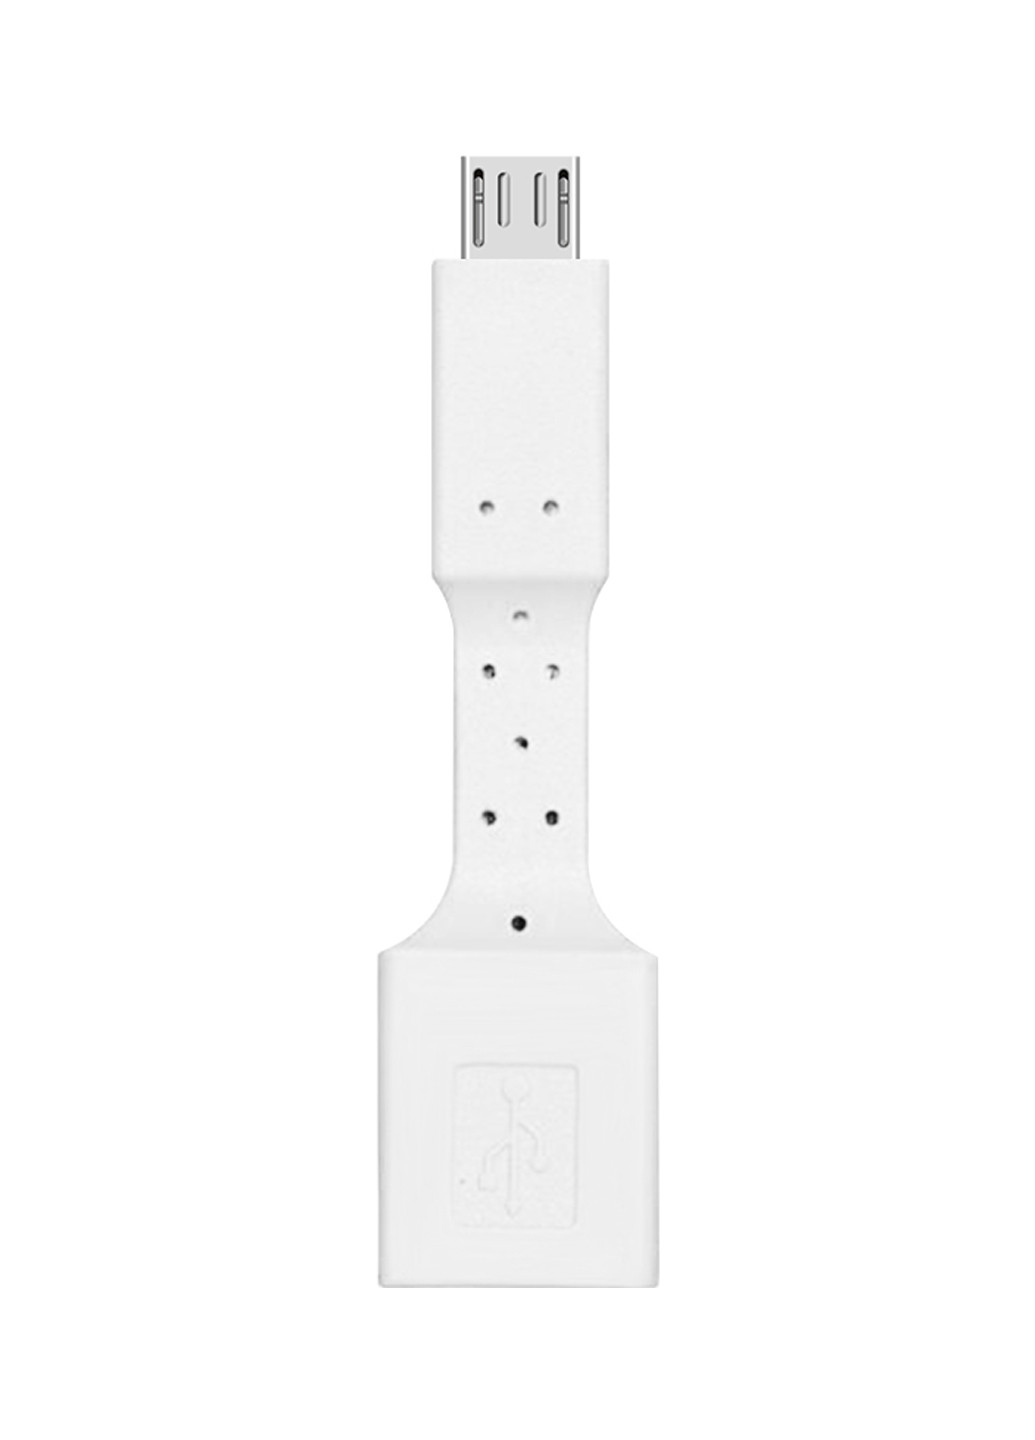 Перехідник AC-110 USB - MicroUSB з кабелем білий XoKo ac-110 usb - microusb с кабелем белый (144530487)